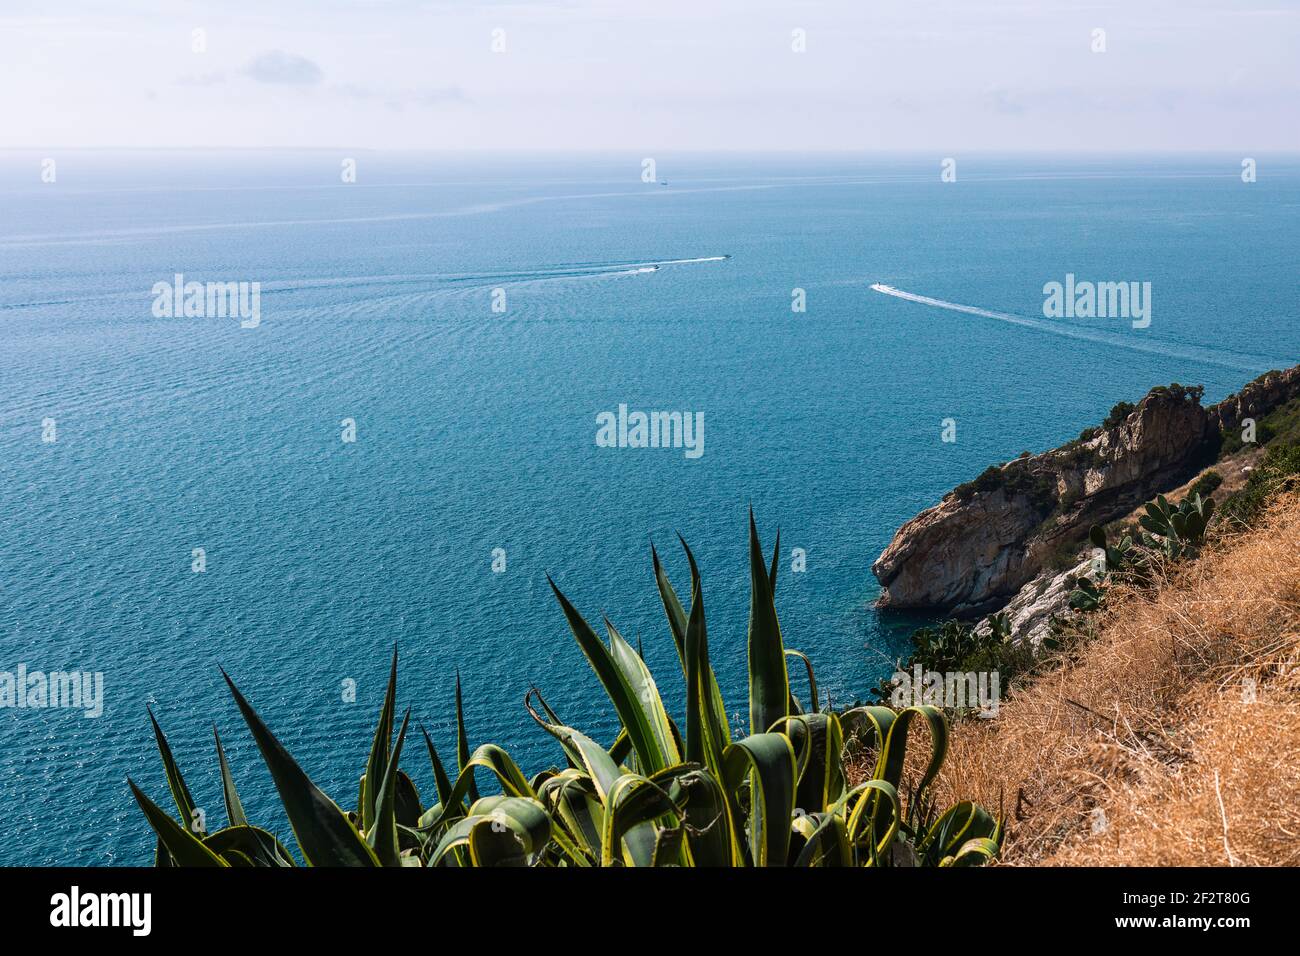 Der Blick von der Klippe auf das ruhige blaue Meer der Insel Elba, durchzogen von Hochgeschwindigkeitsbooten. Toskana, Italien. Stockfoto